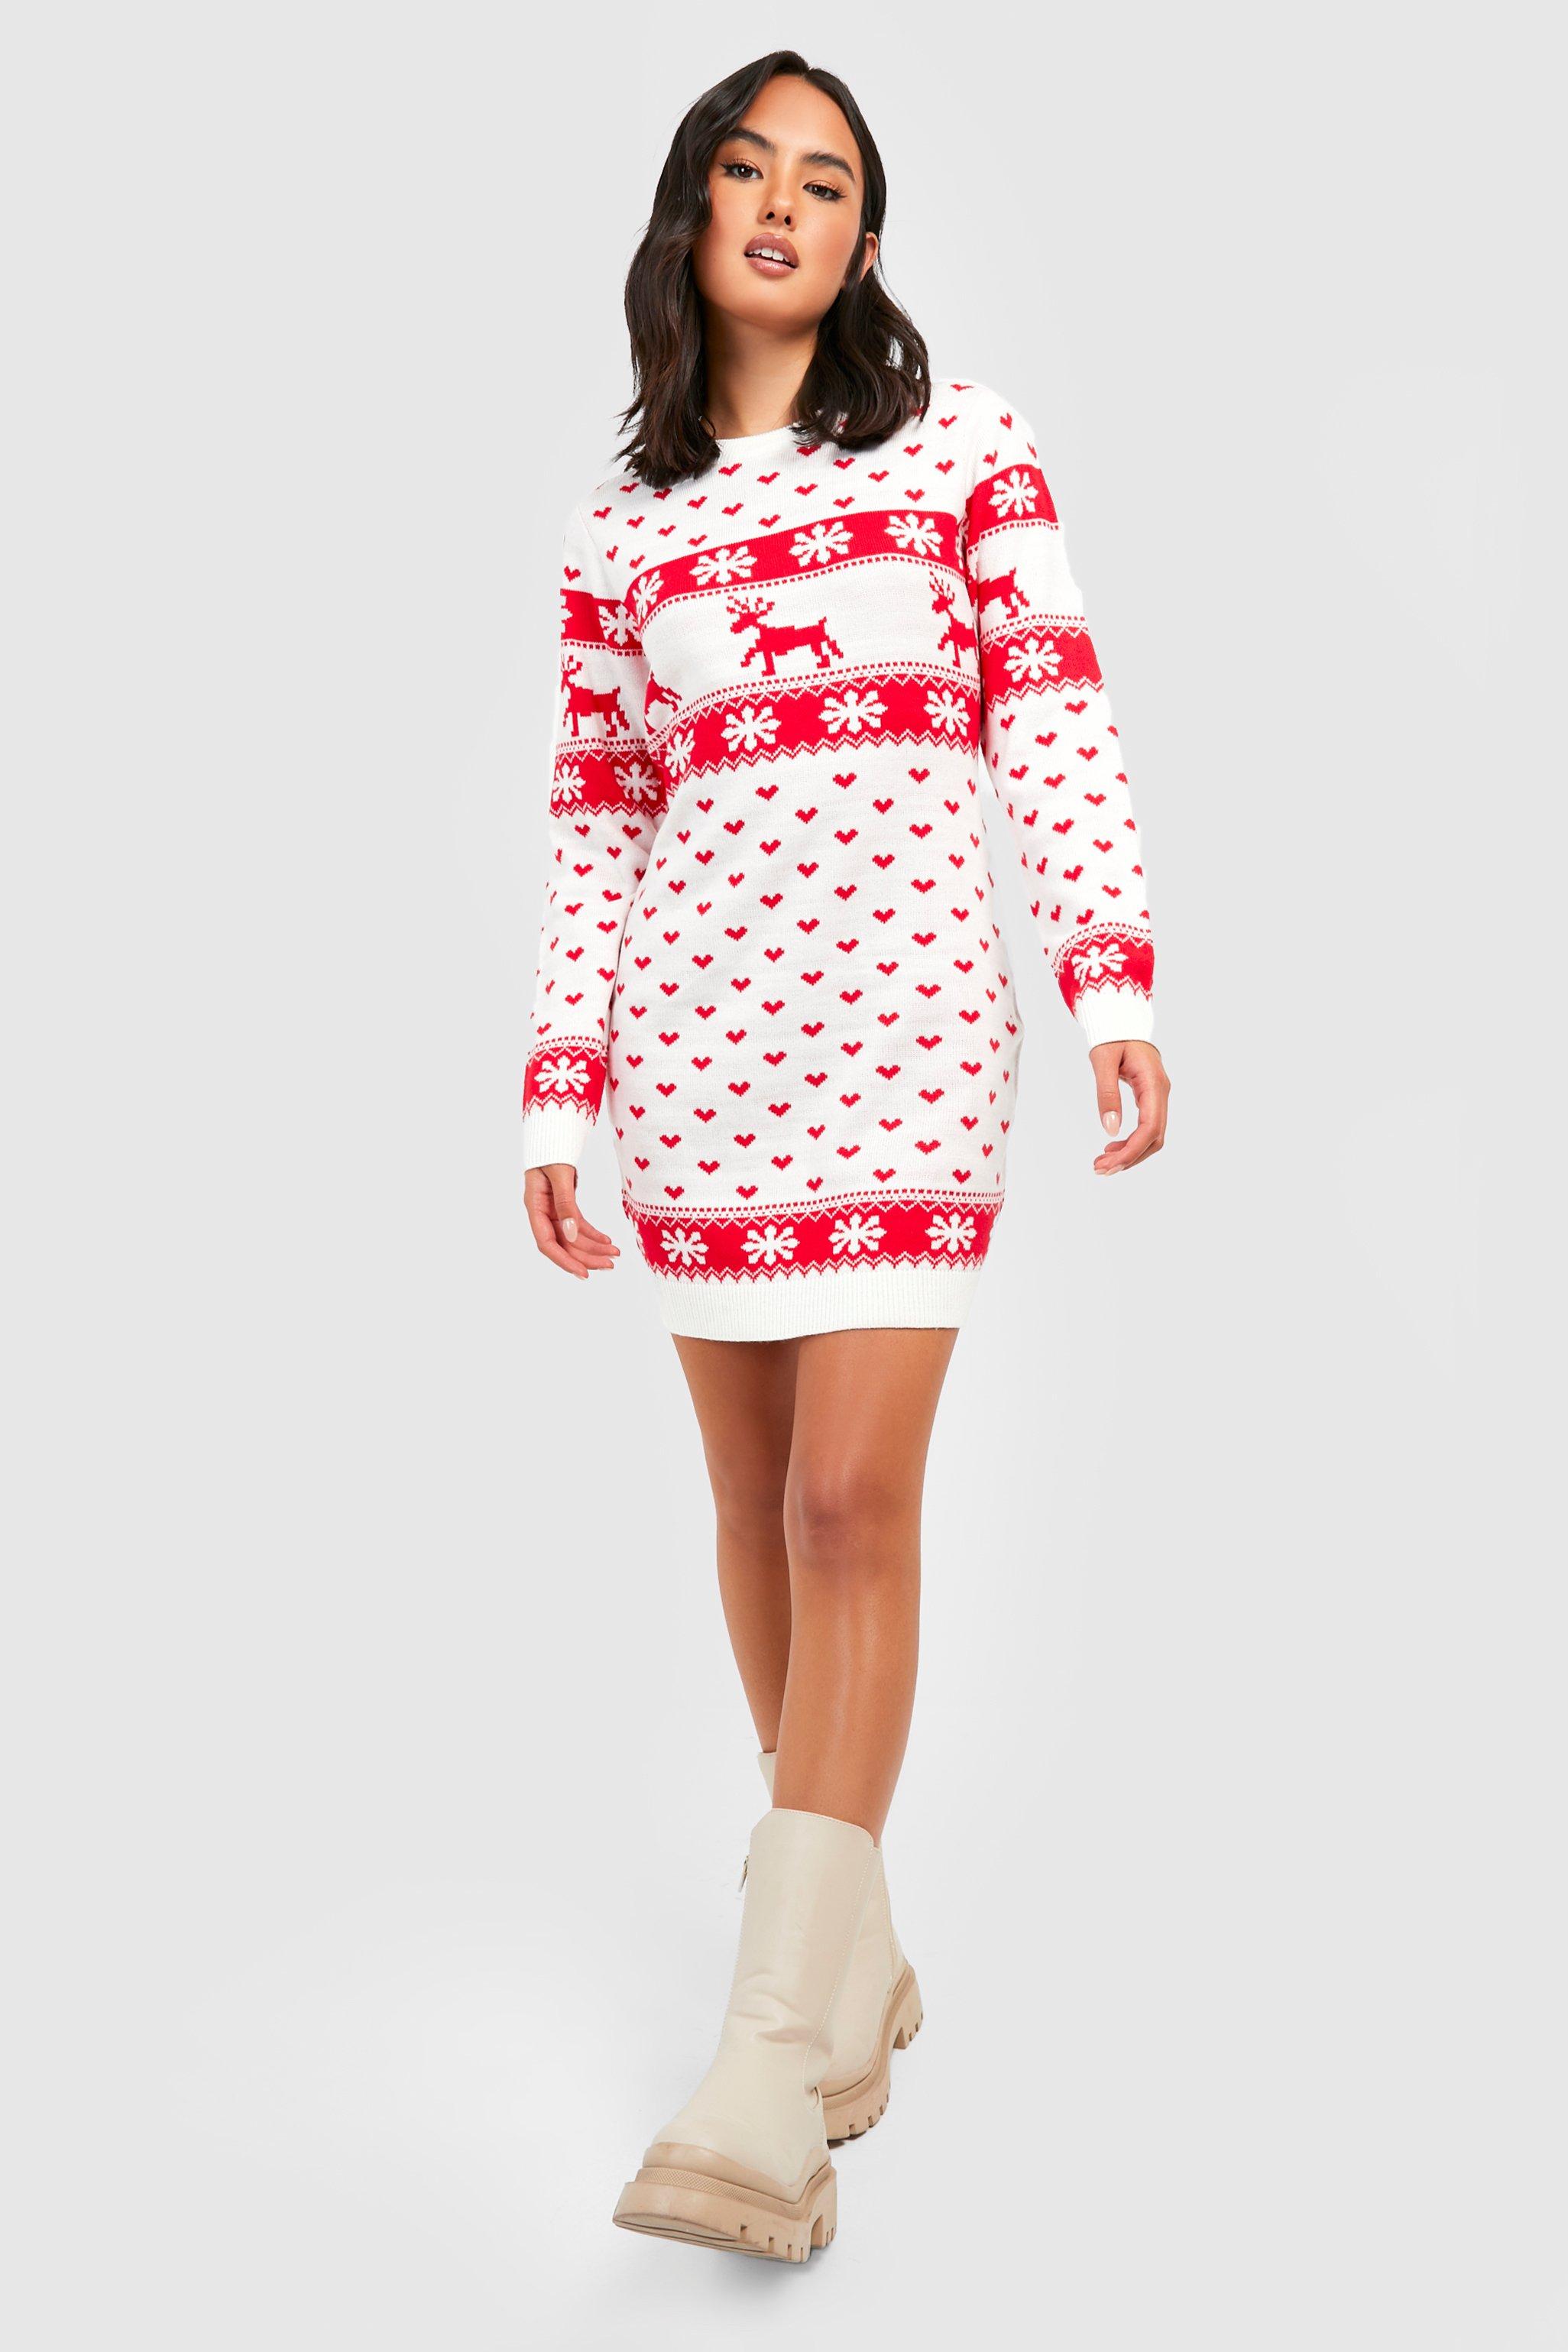 Reindeers \u0026 Snowflake Christmas Sweater 